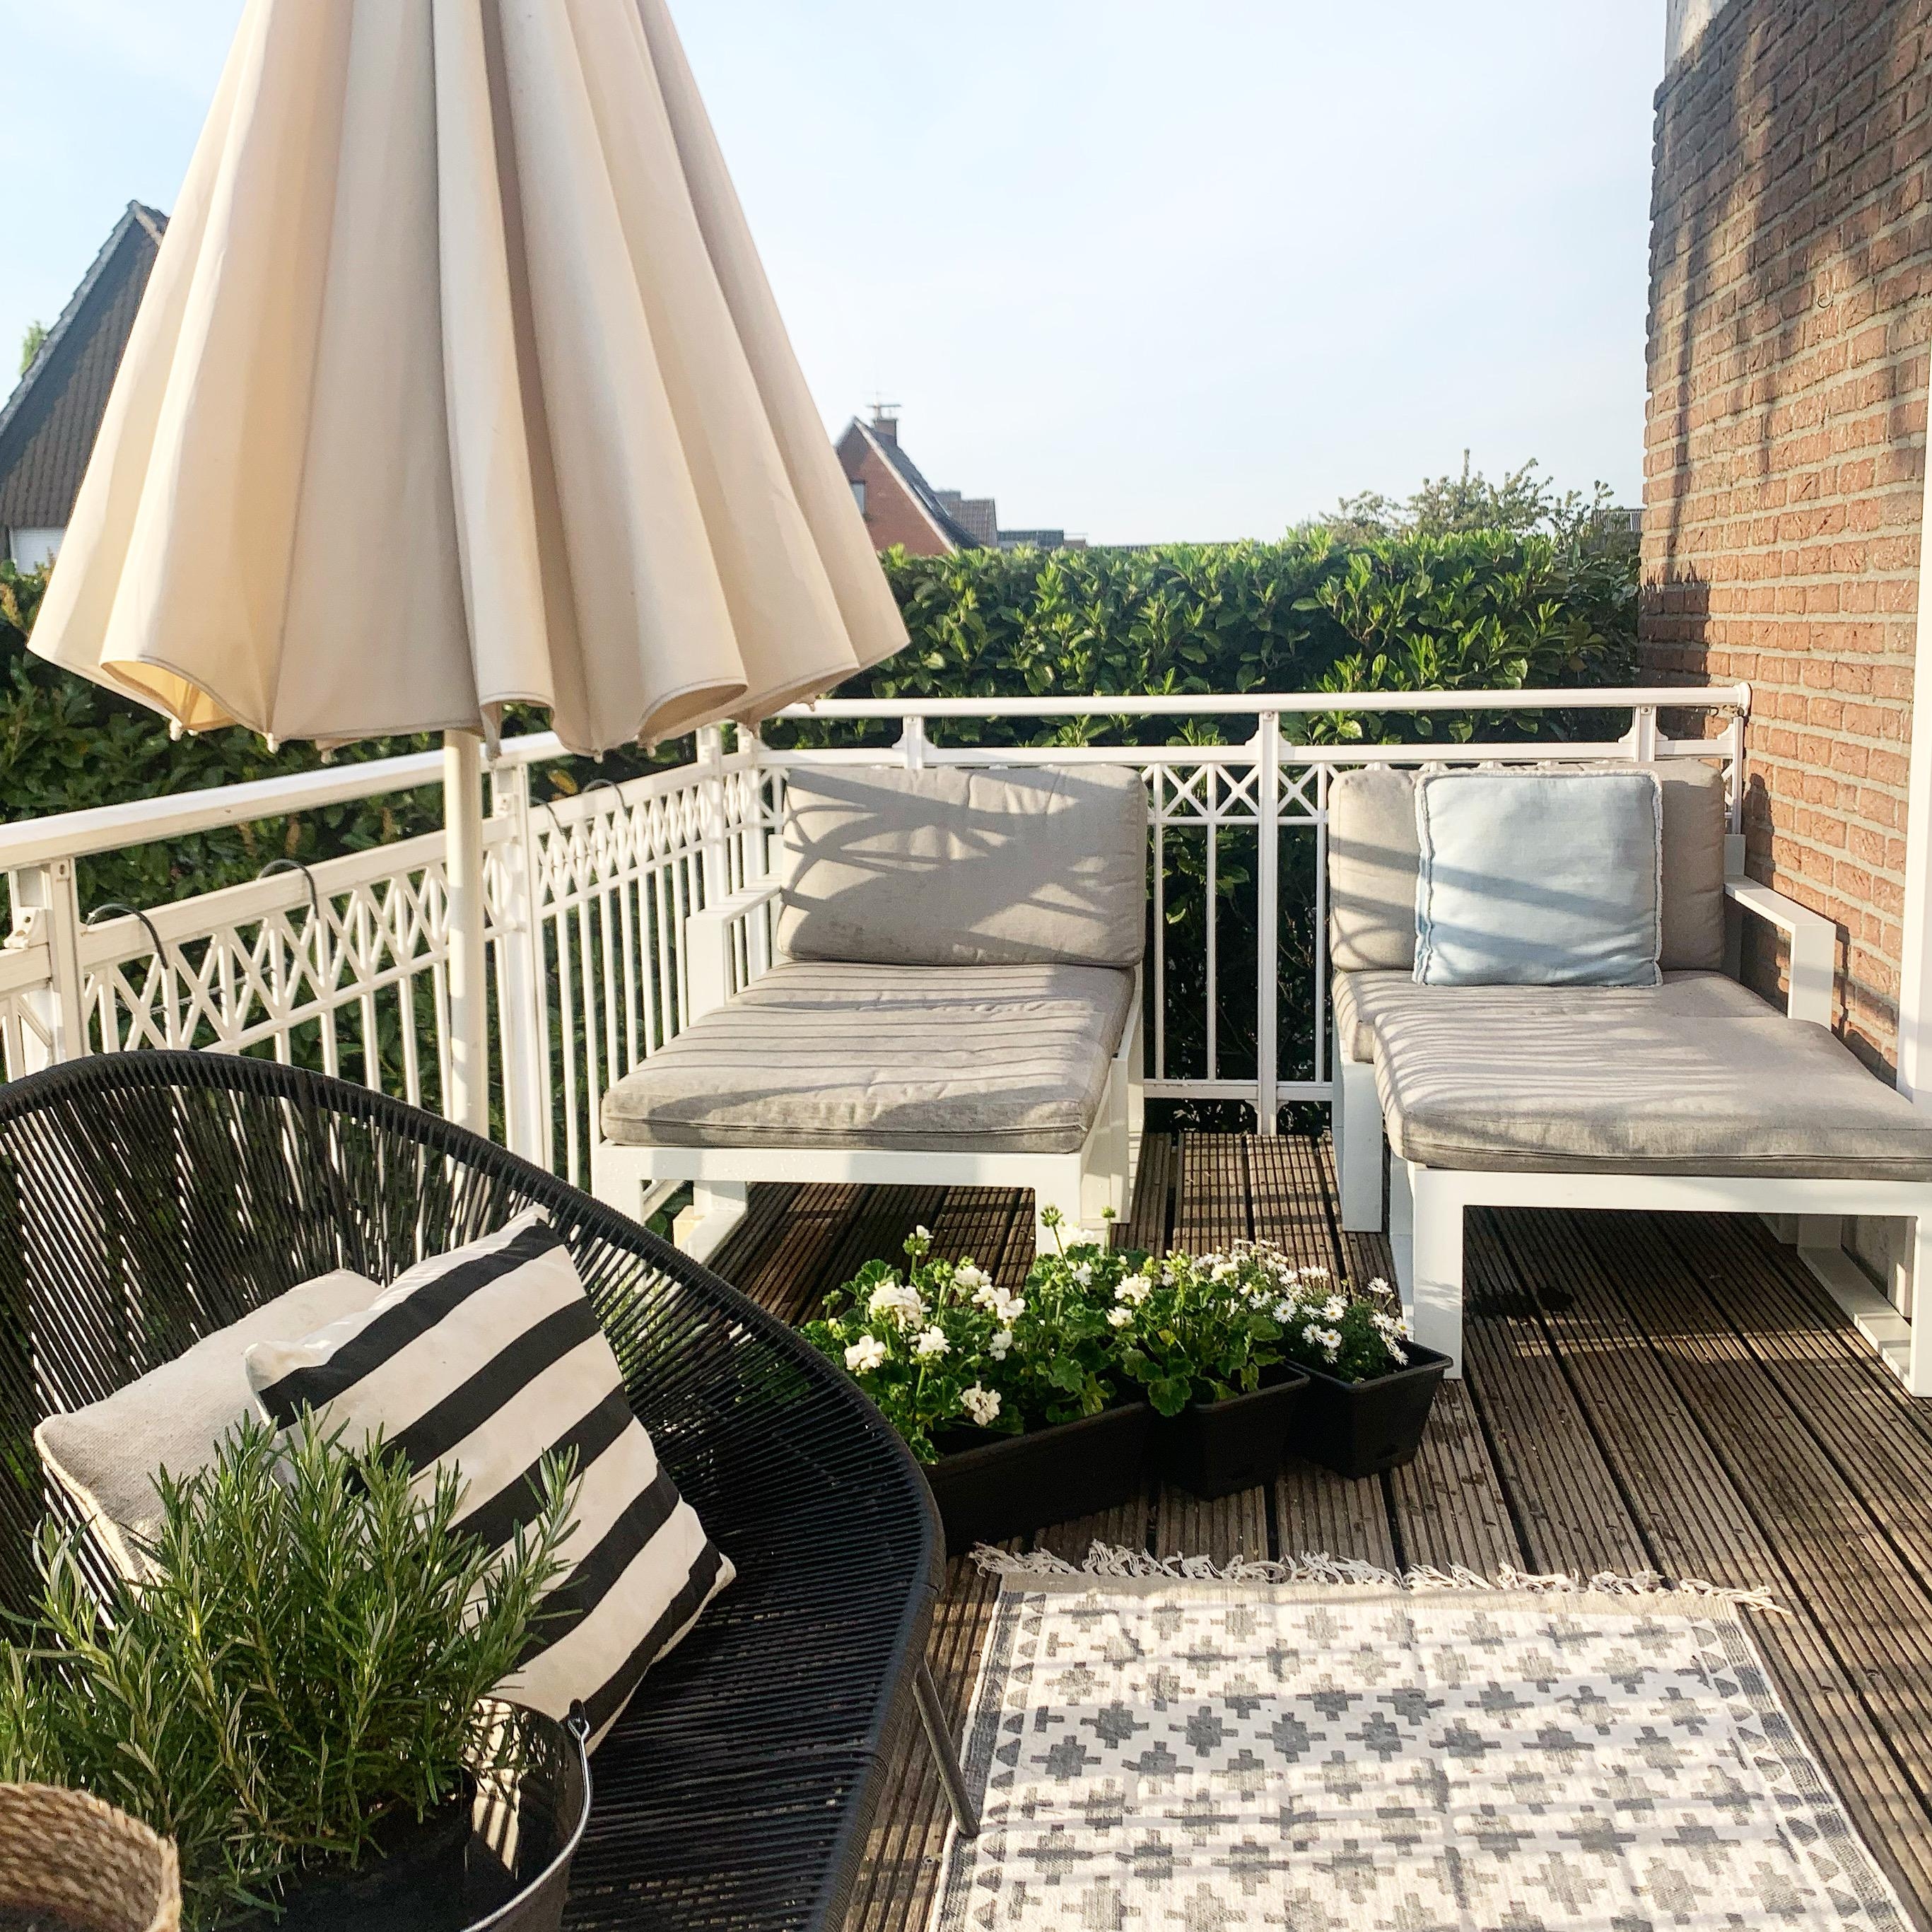 Ein bisschen relaxen auf 
Bad Balkonien🌿✌🏼#balkon #balkonliebe #sommerblumen #balkondeko #balkonien #outdoorteppich